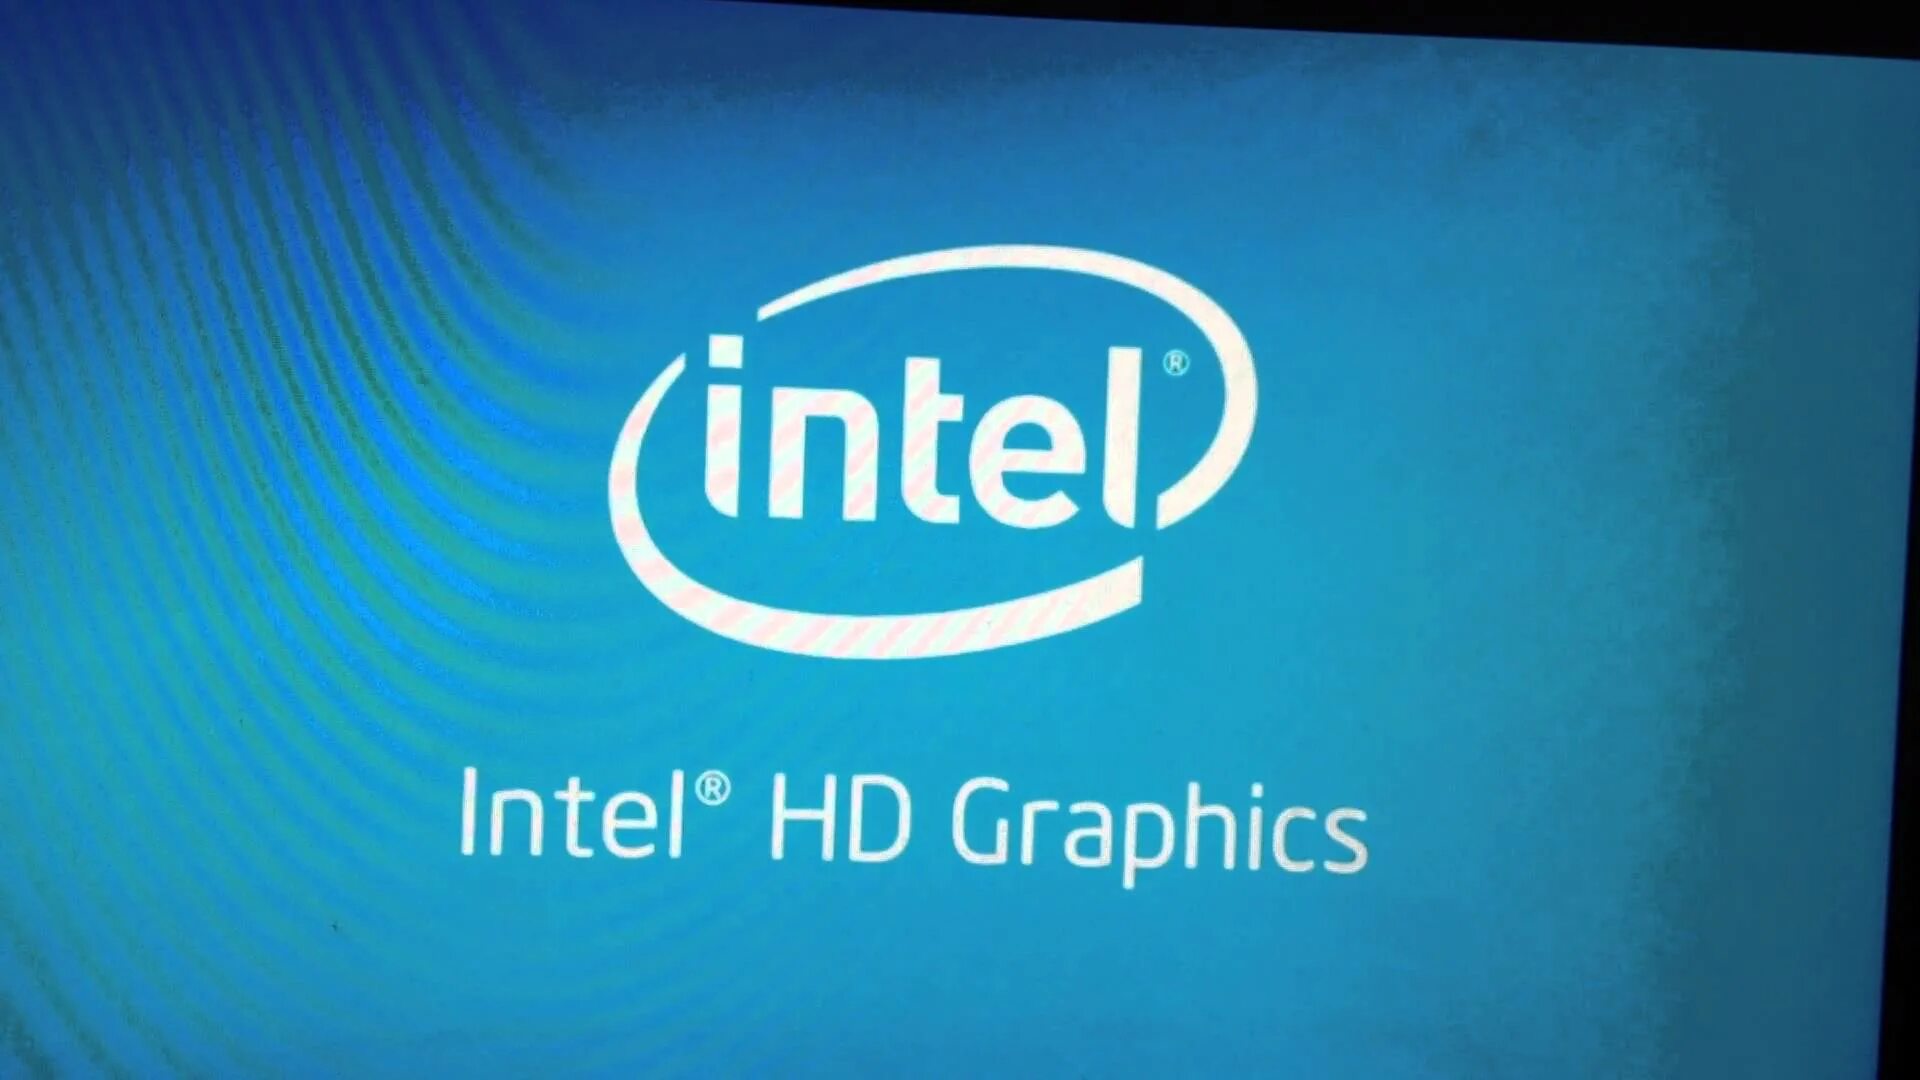 Intel. Интел HD. Intel HD Graphics. Логотип Интел хд Графикс.